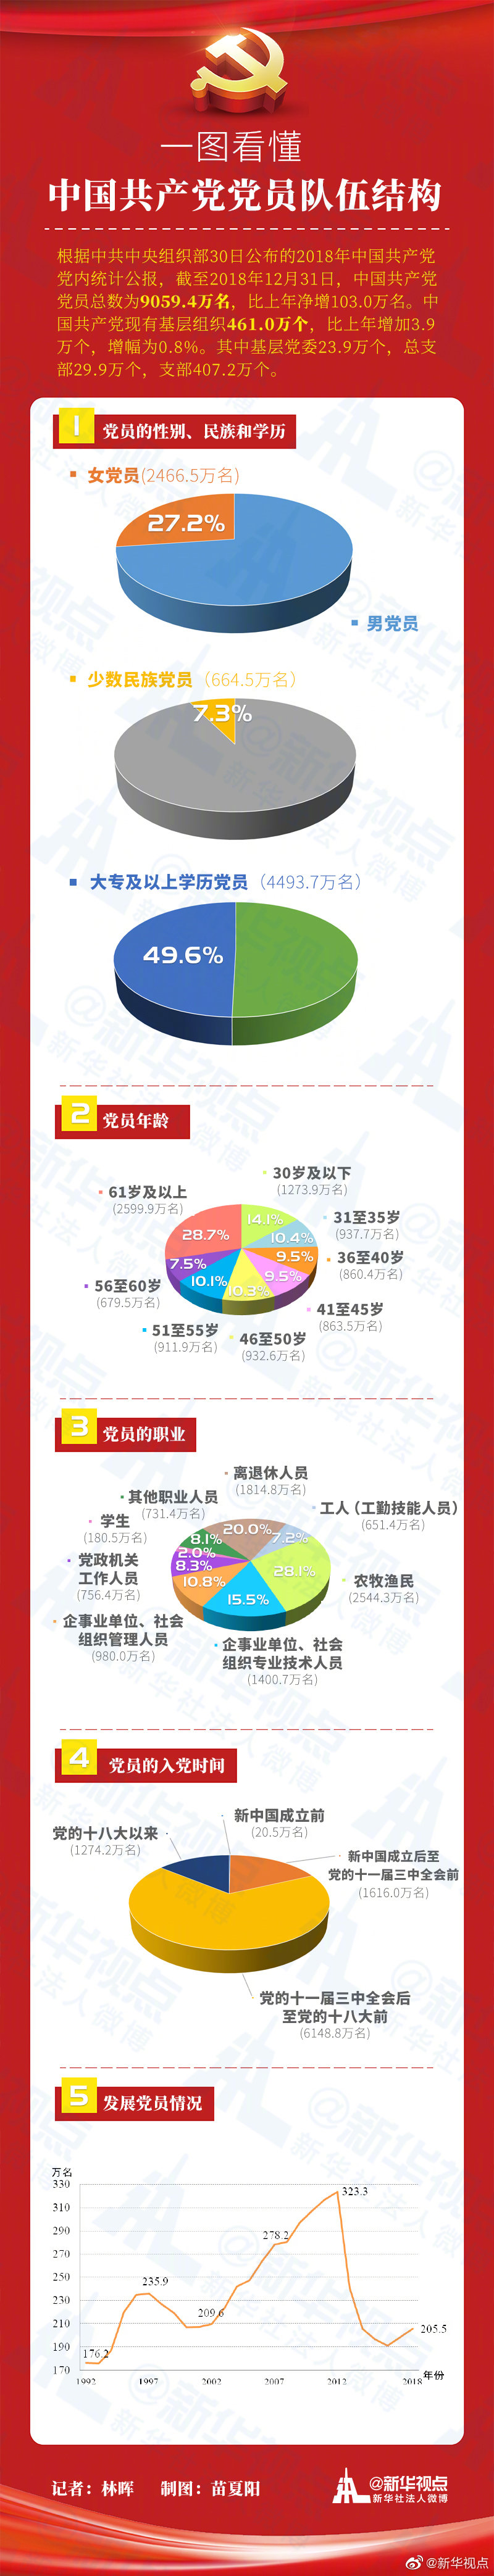 2018年中國共產黨黨內統計公報